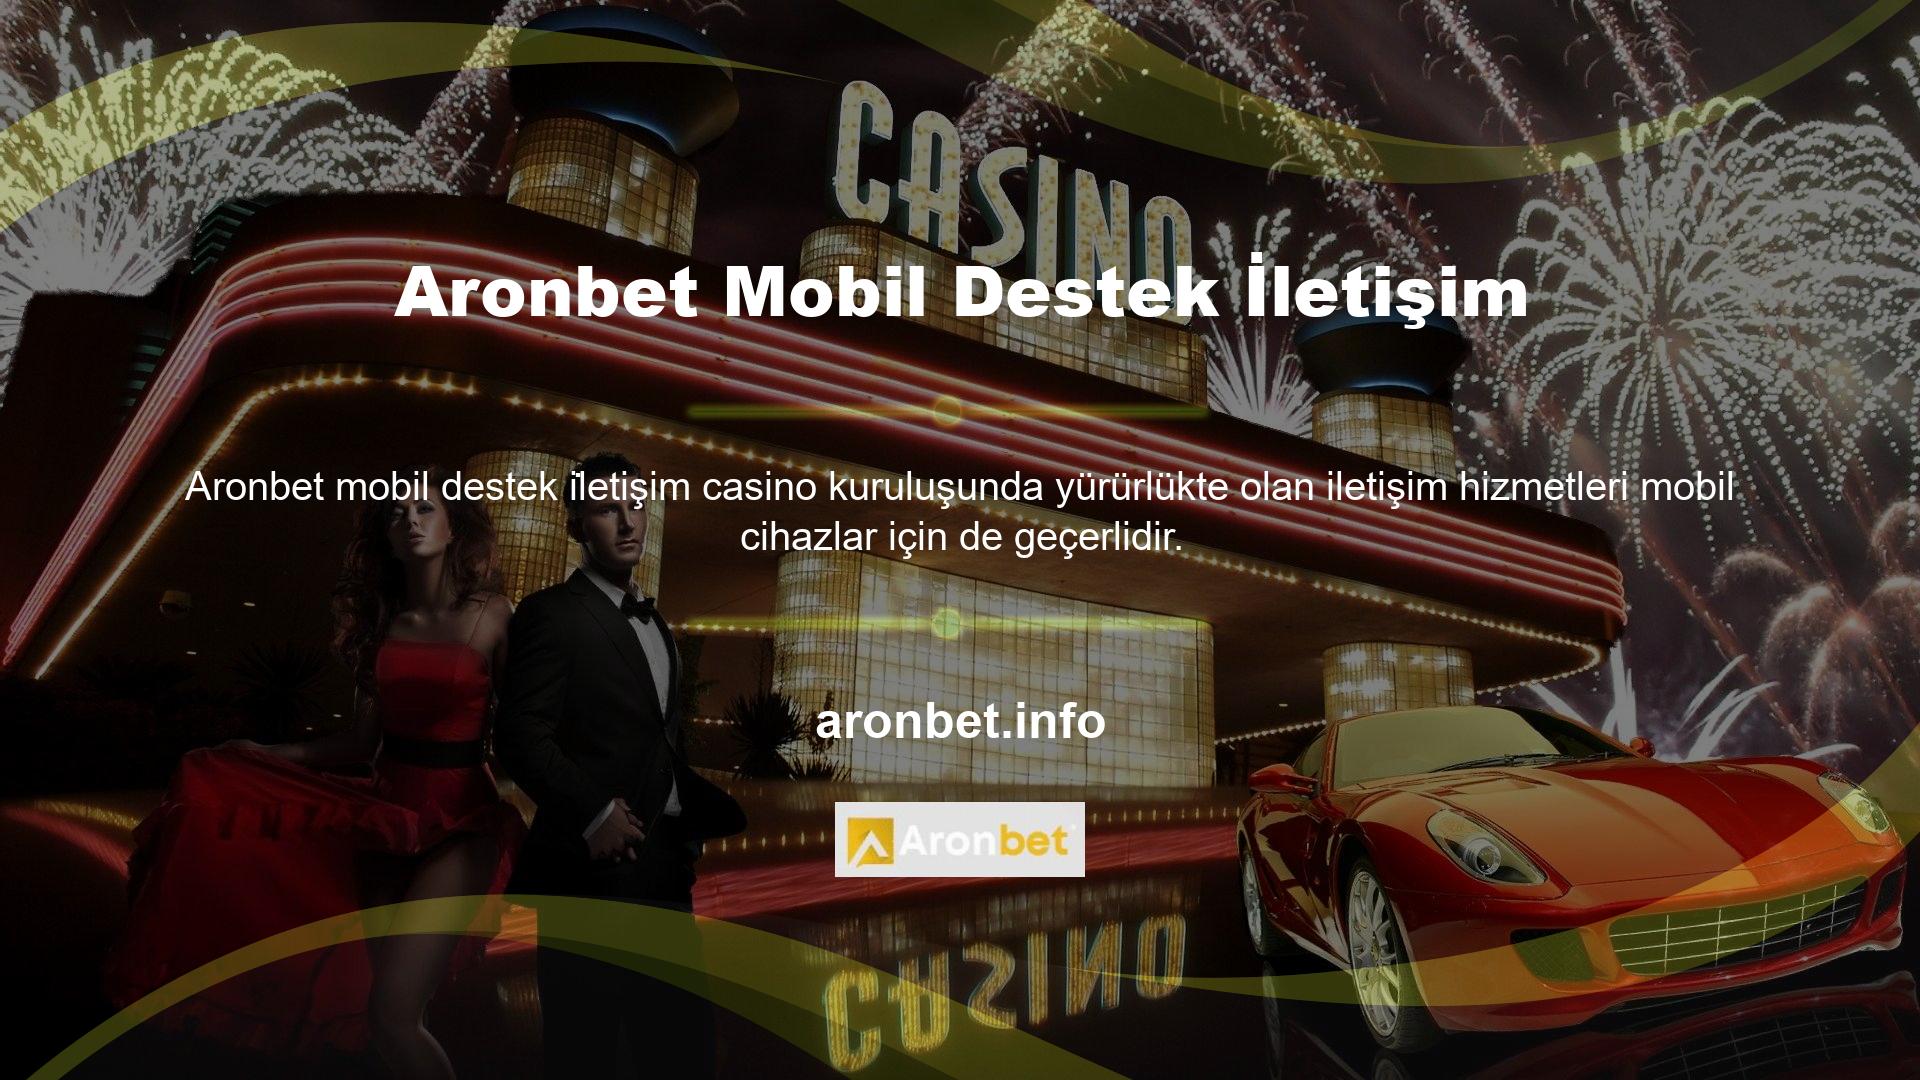 Aronbet mobil uyumlu iletişim destek yöntemi her türlü konudaki sorularınıza cevap veriyor